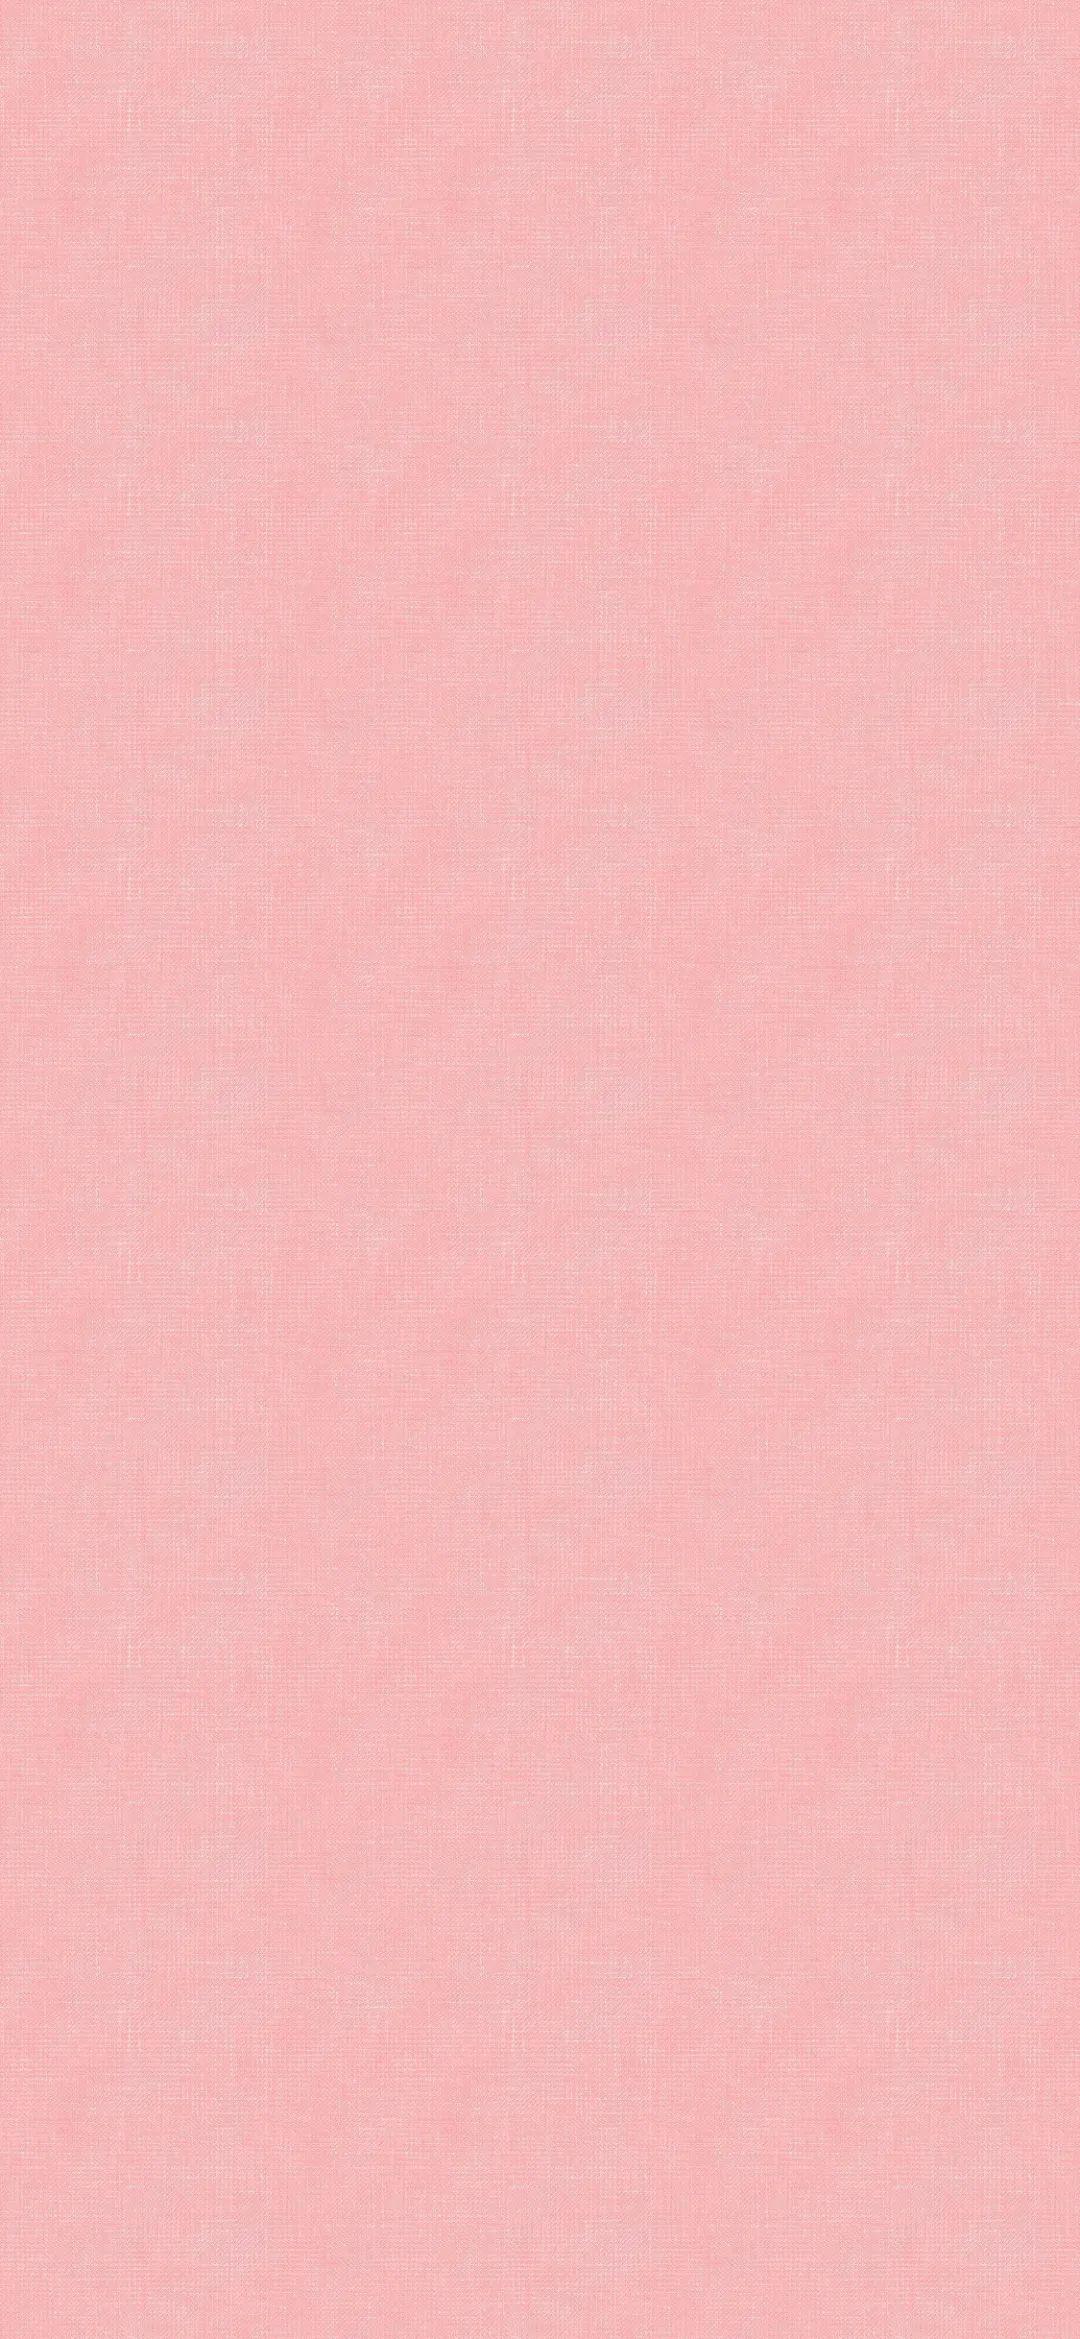 微信聊天背景 粉色图片